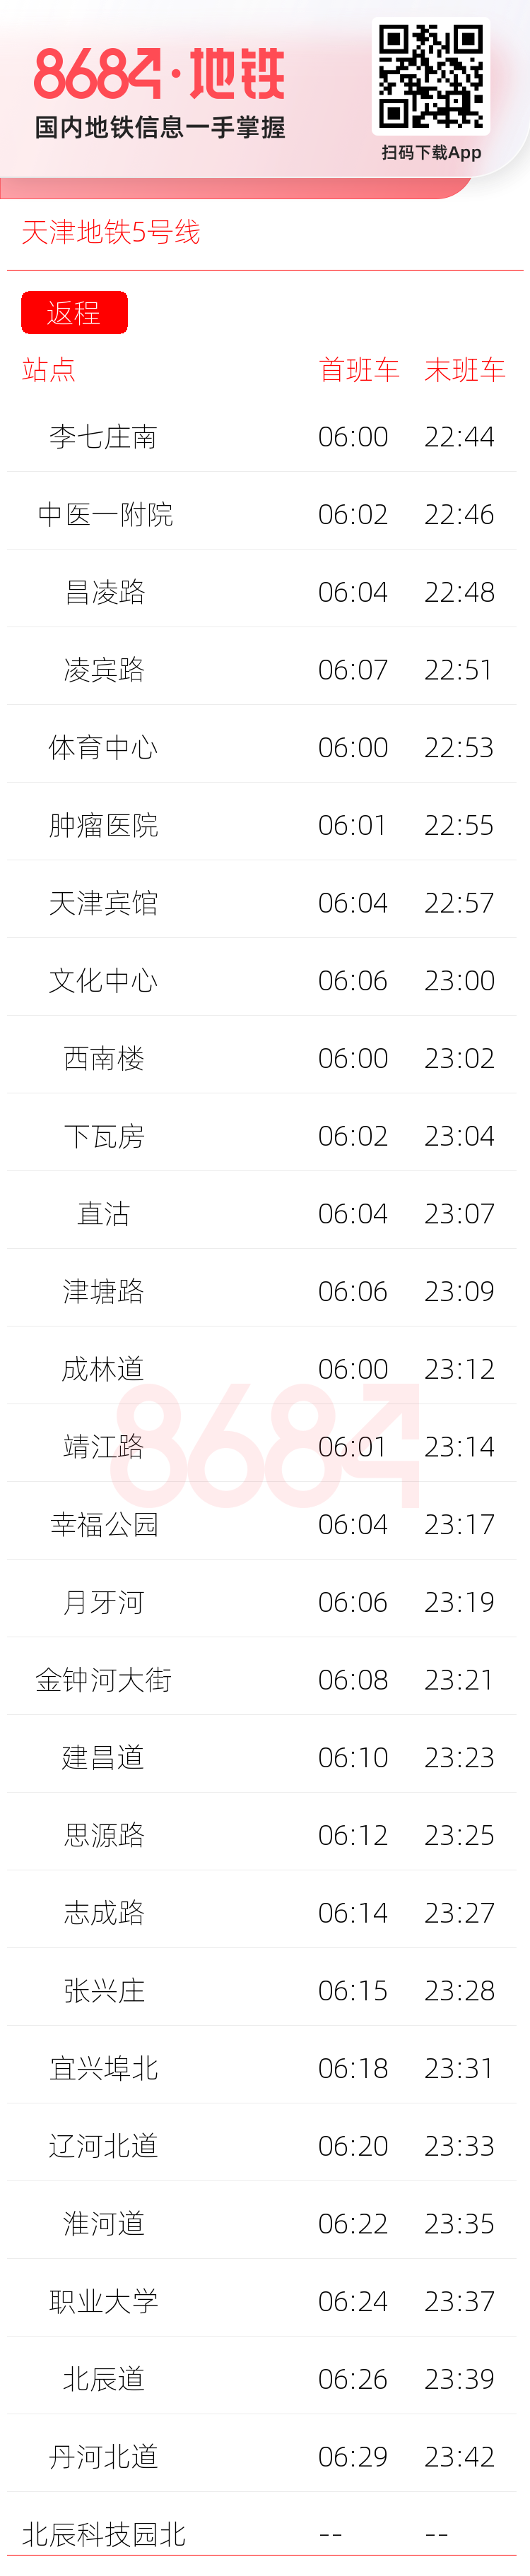 天津地铁5号线运营时间表